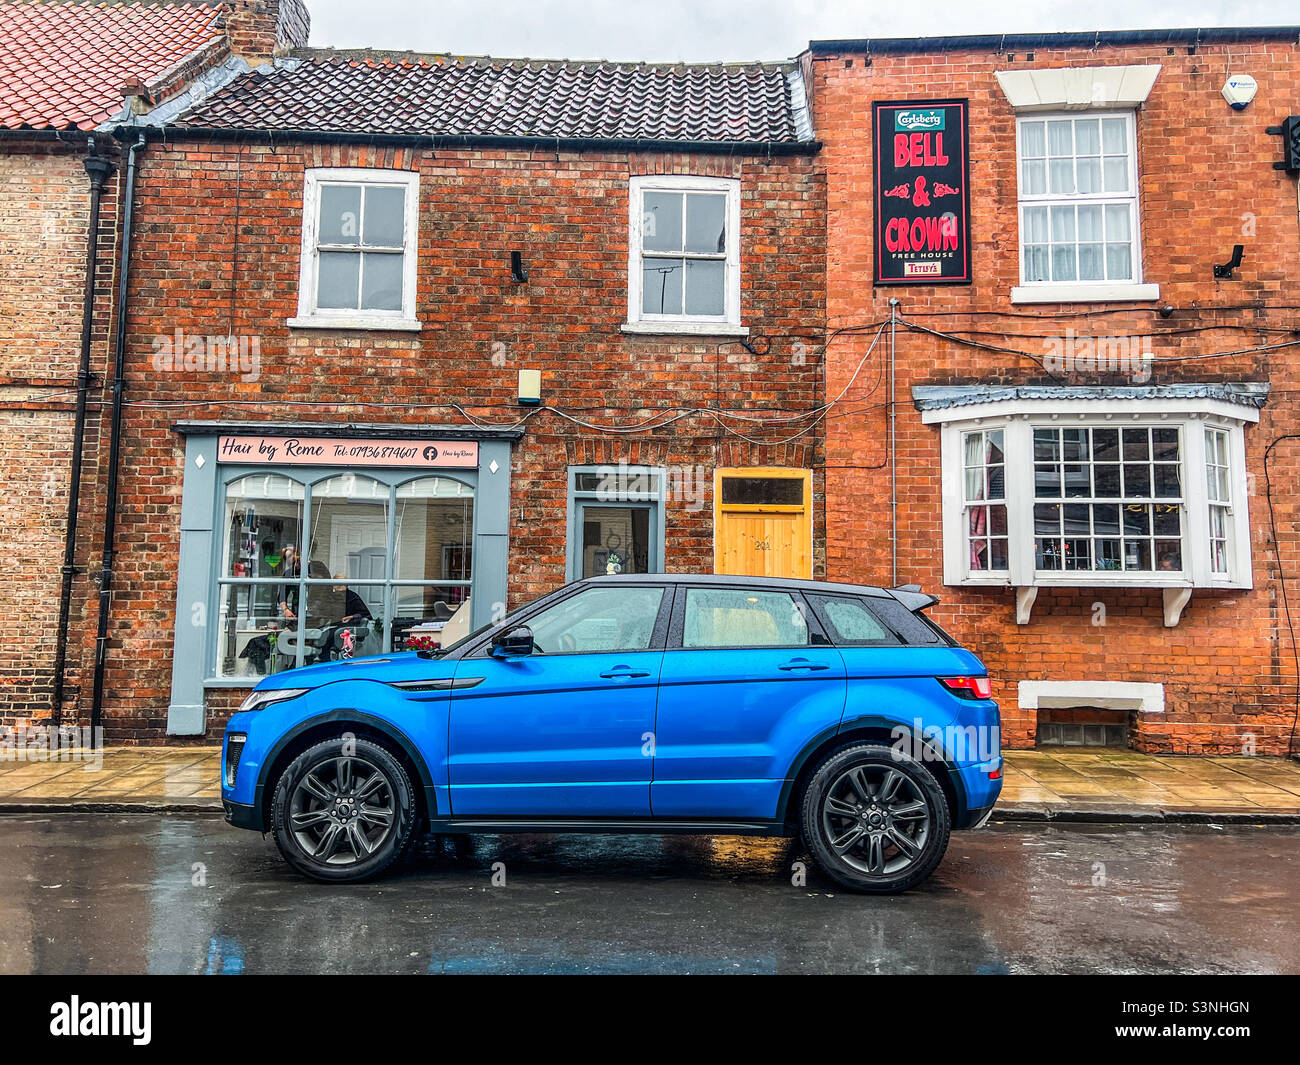 Vehículo azul brillante del Range Rover Evoque estacionado en carretera en un pueblo urbano Foto de stock